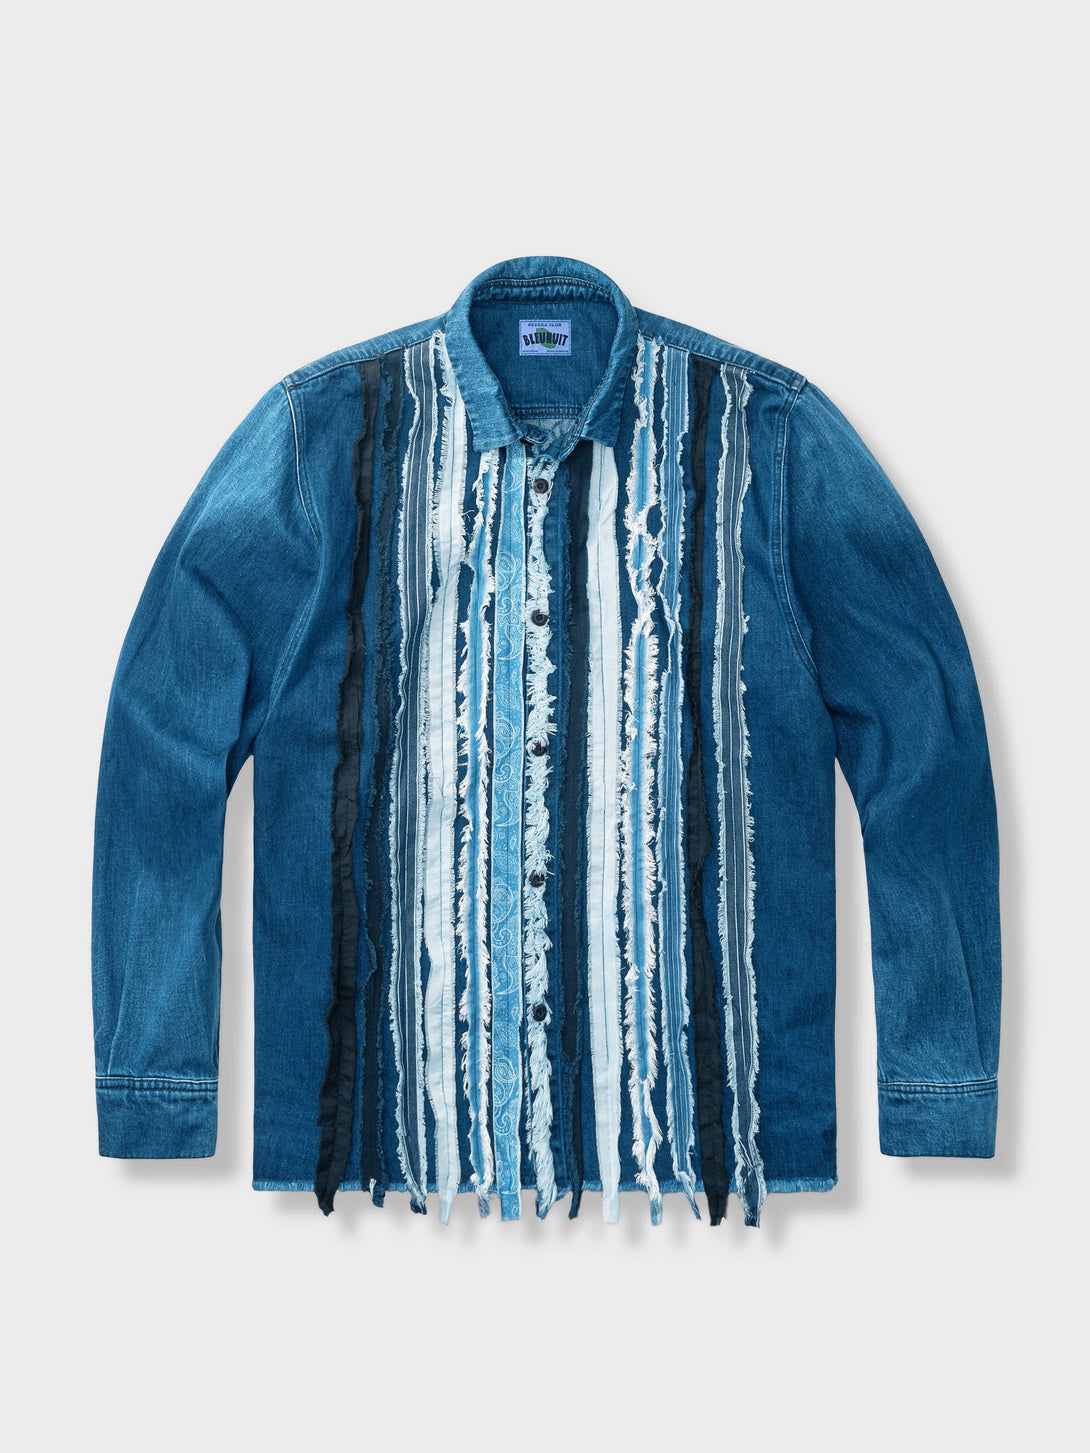 藍染めパッチワークデニムジャケット、ペイズリー柄のアクセントと裾の前後非対称デザインが特徴